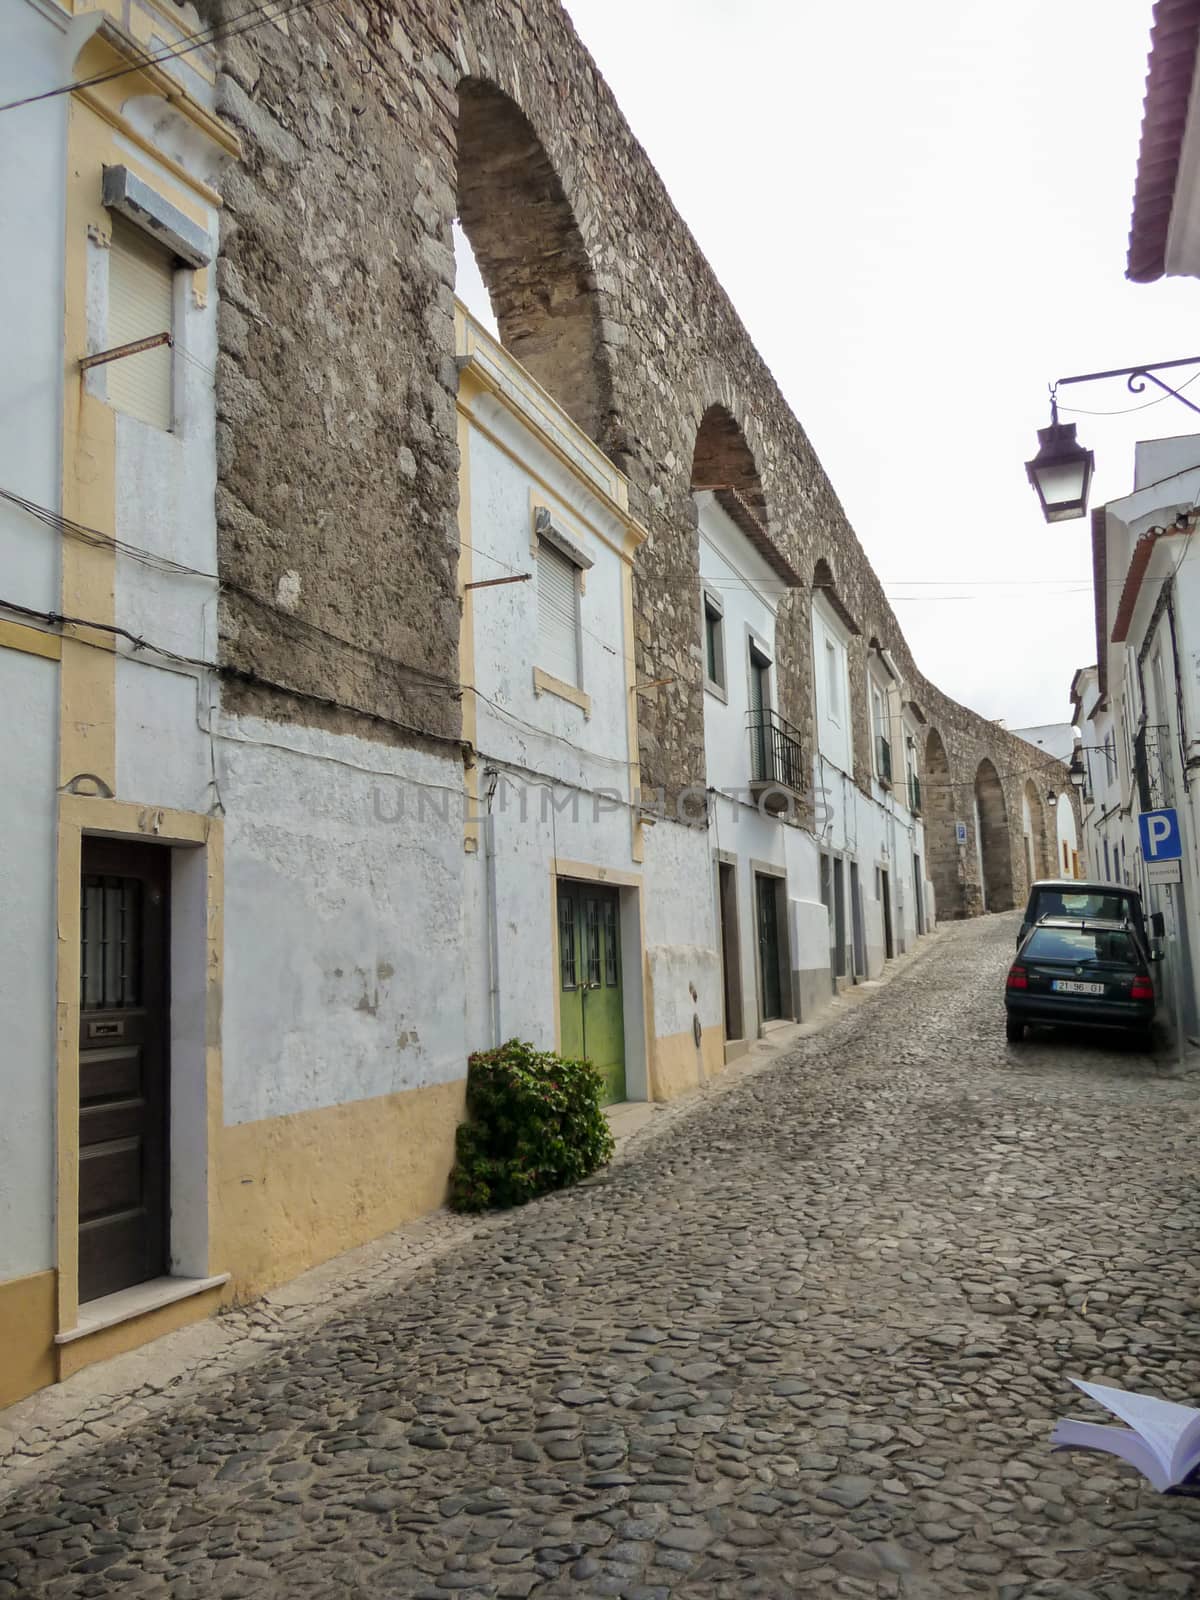 Houses built in the arches of Aqueduto da agua de Prata in Evora, Portugal in Rua do Cano by kb79